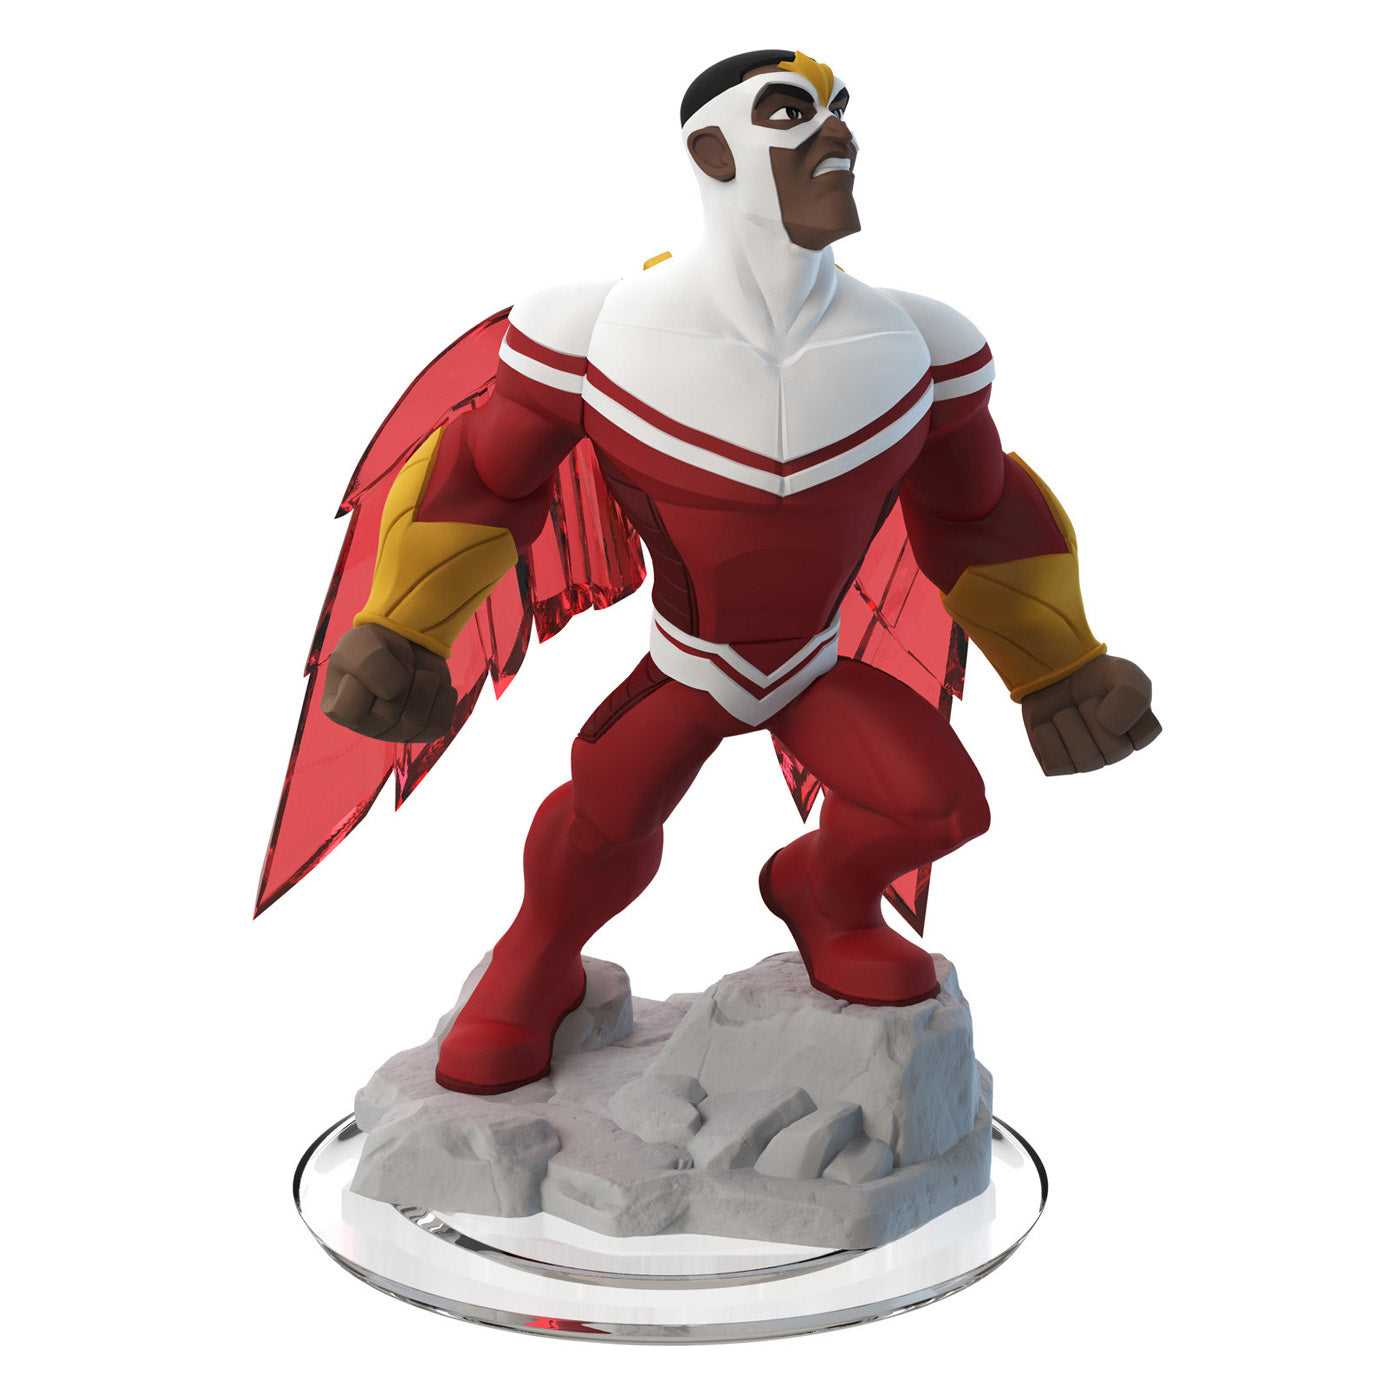 Disney Infinity 2.0 Character: Falcon